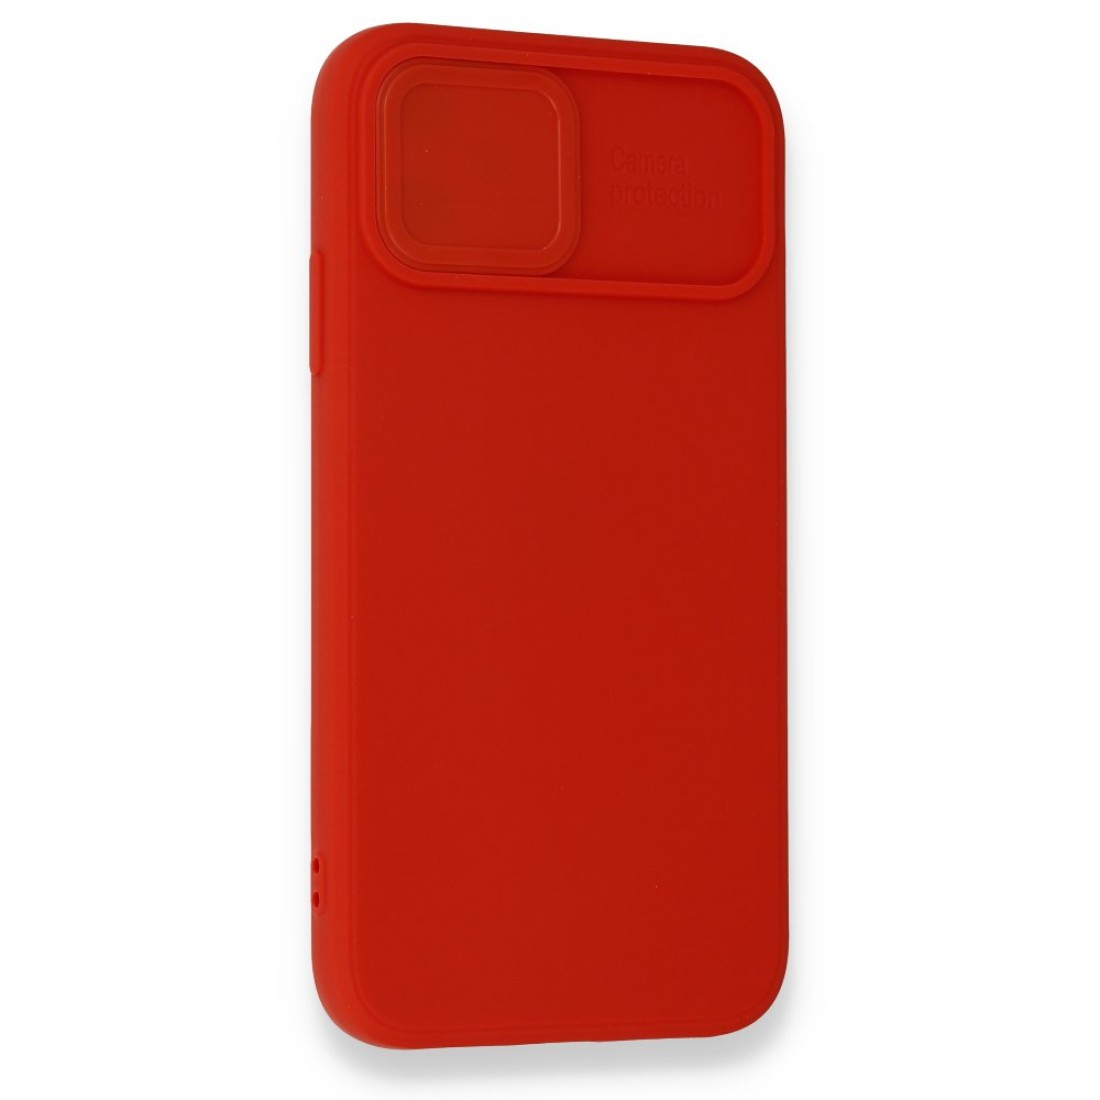 Apple iPhone 12 Mini Kılıf Color Lens Silikon - Kırmızı